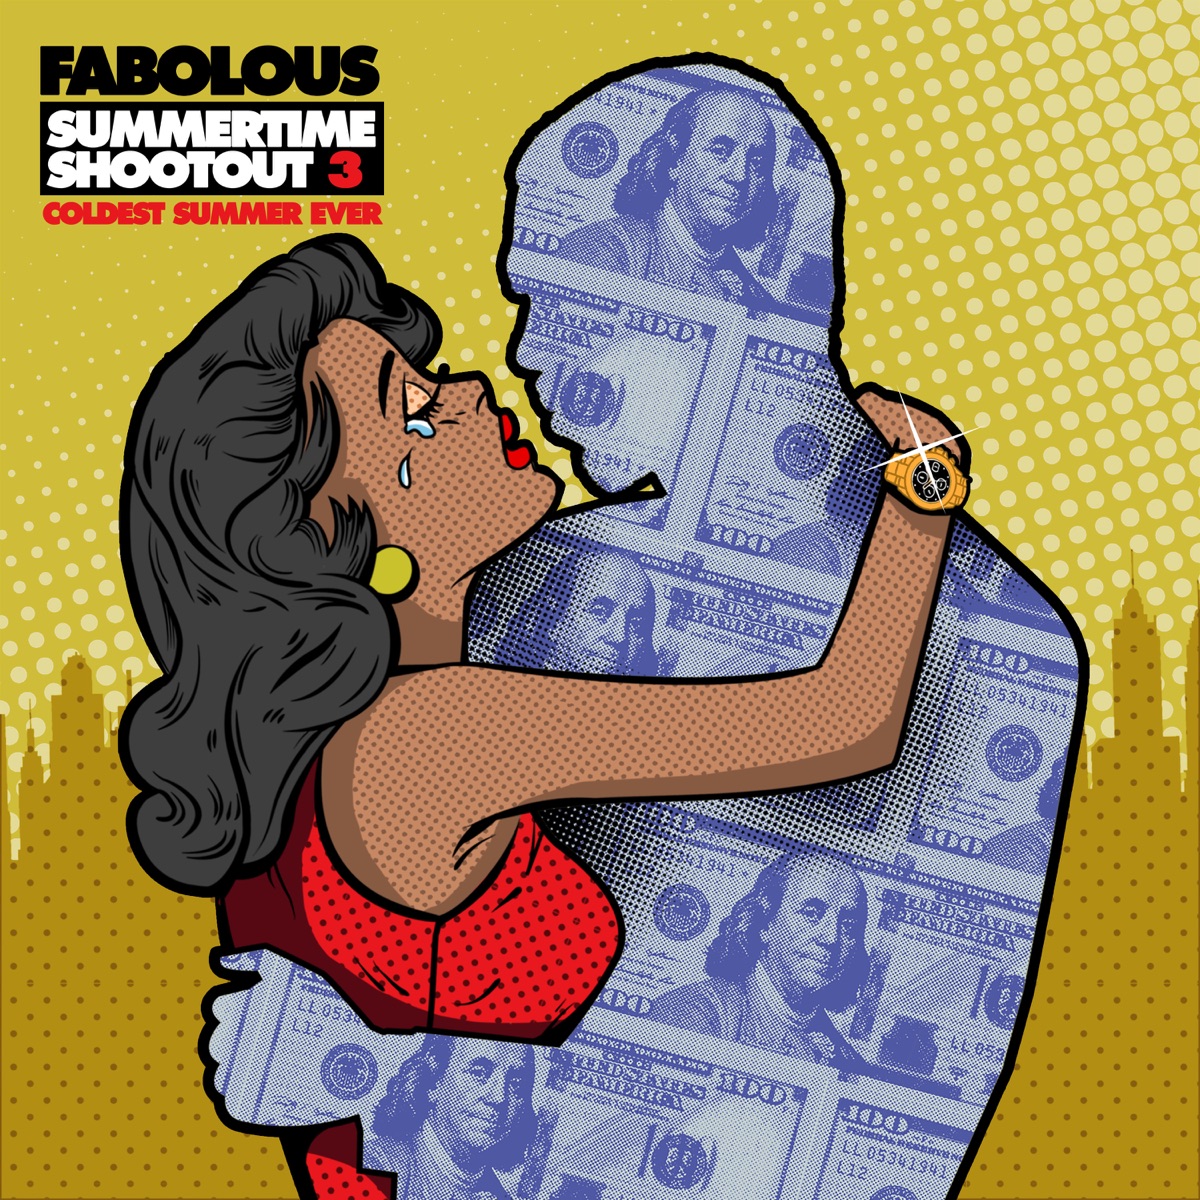 Goyard Bag (feat. Lil Uzi Vert) - Single - Album by Fabolous - Apple Music